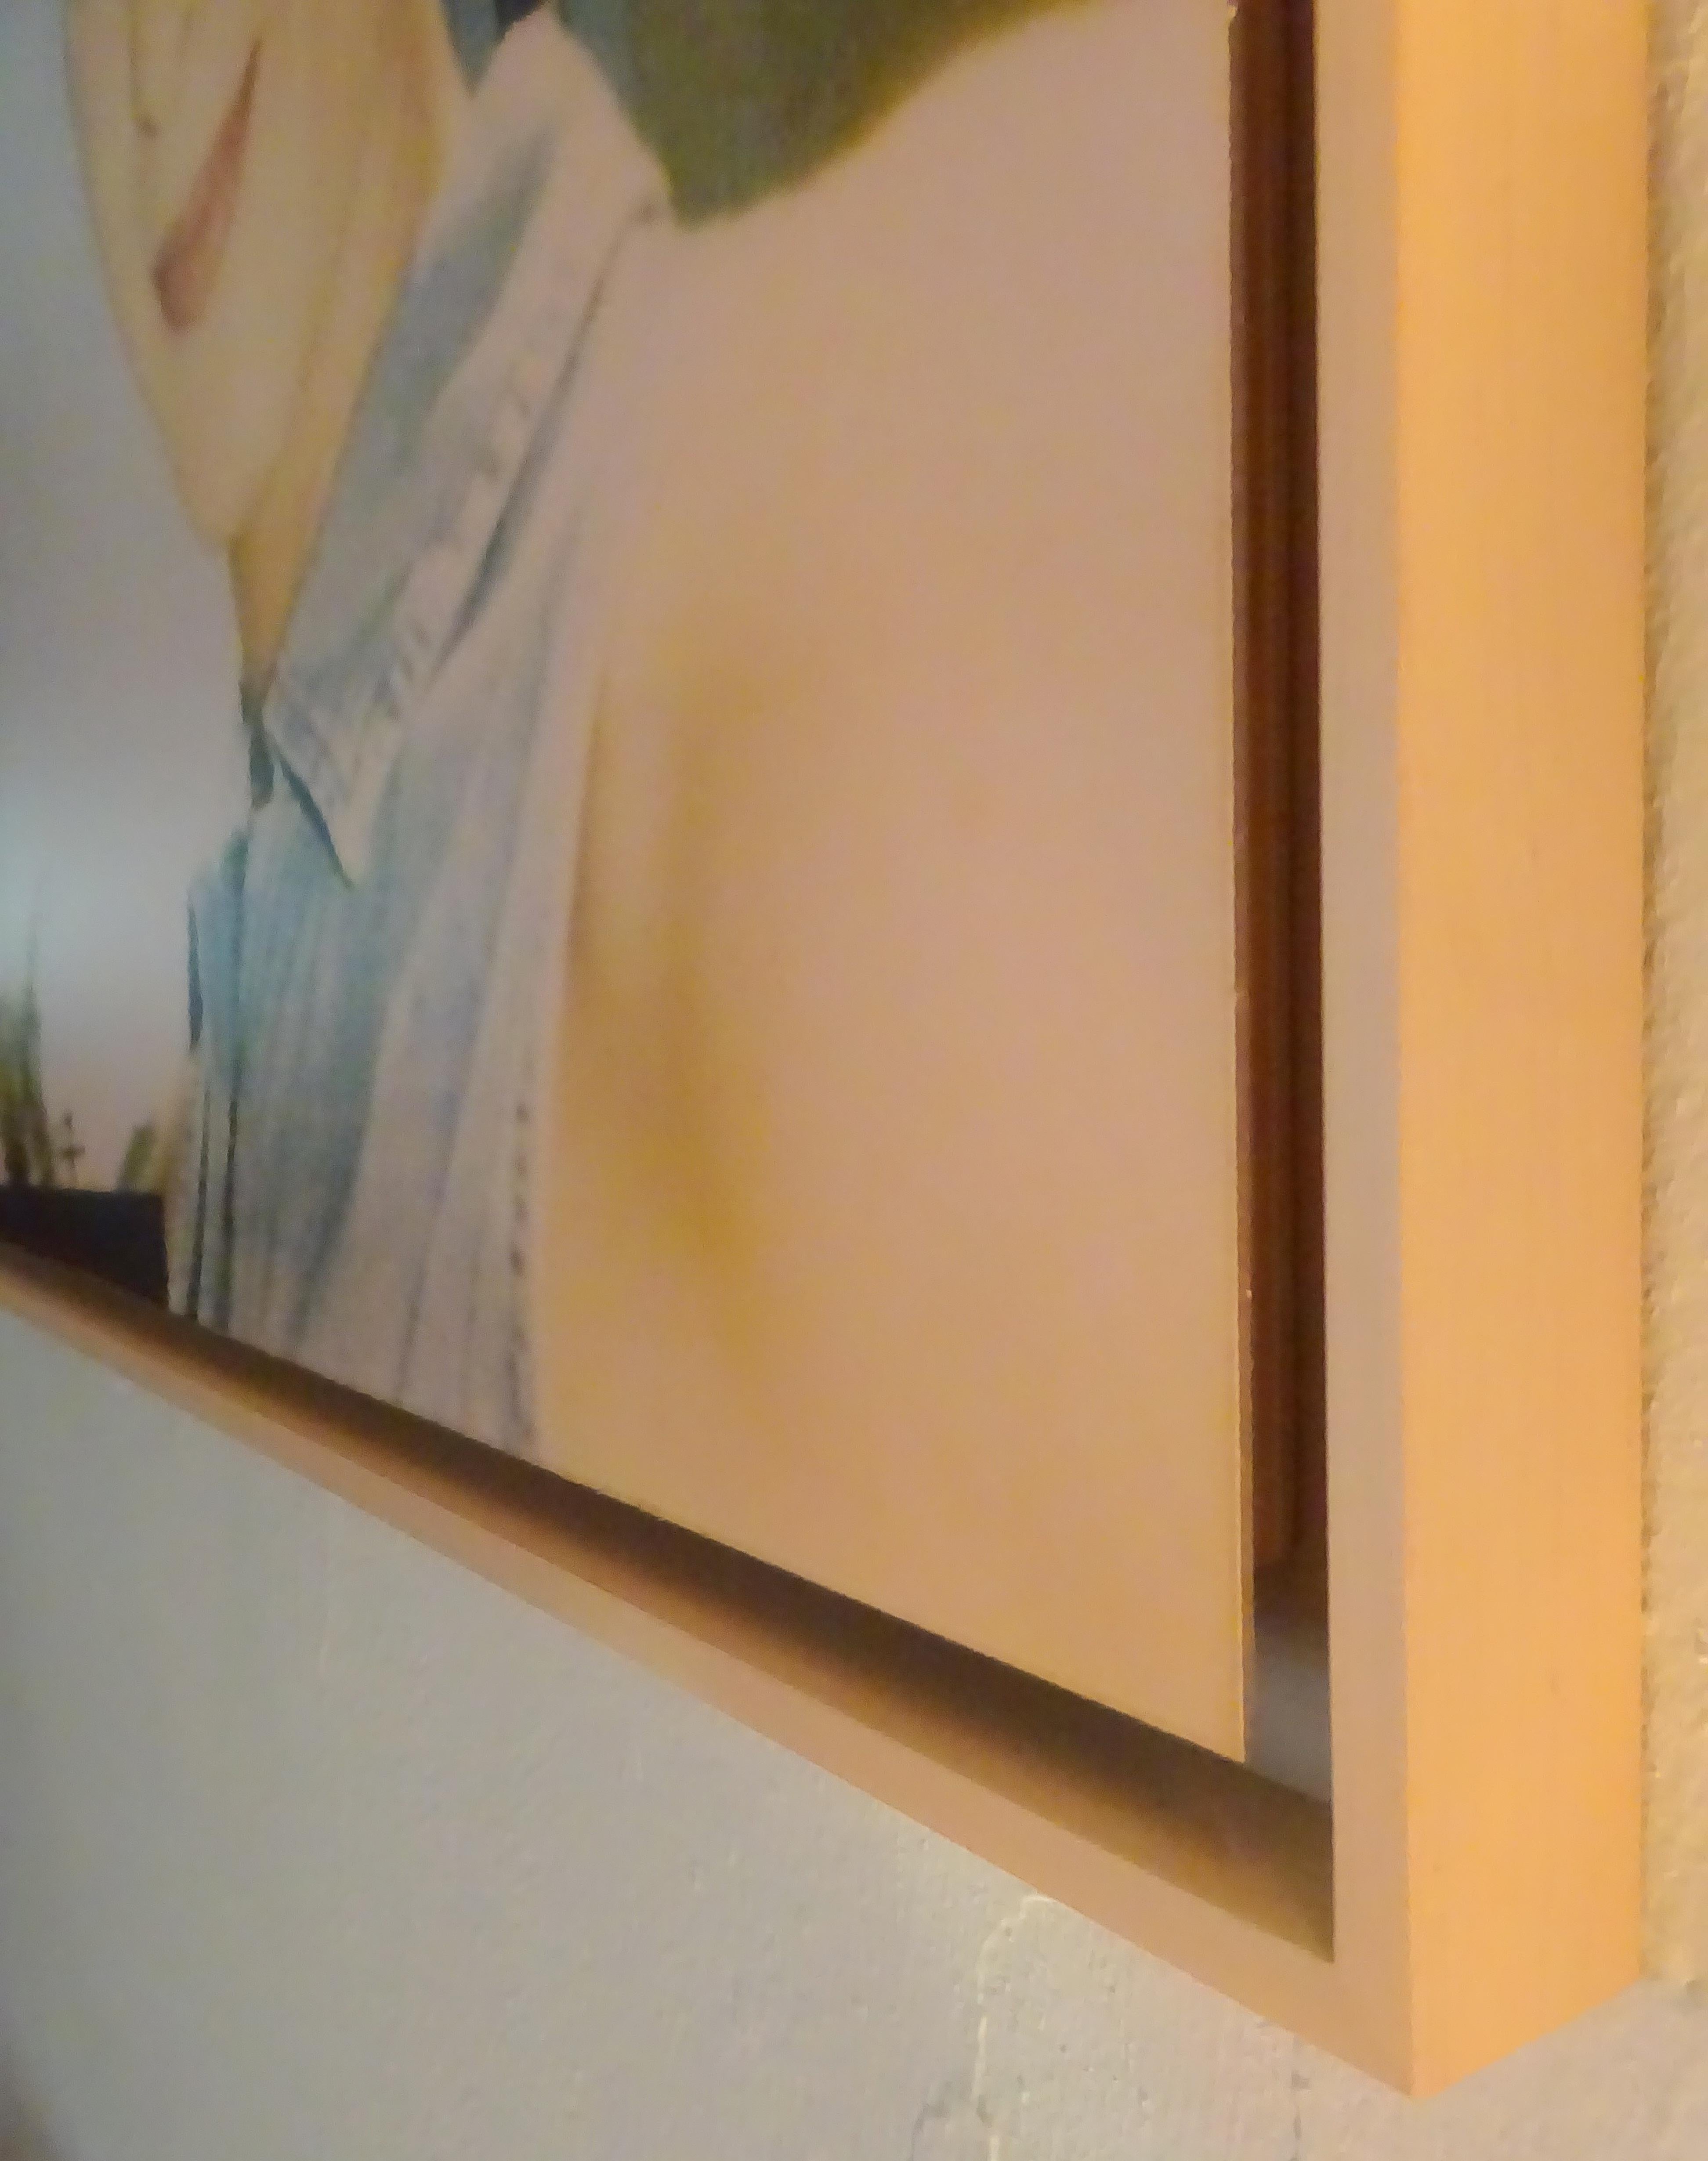 April Blue Eyes (Suburbia) - 2004, 

60x80cm, Auflage: 2/5, 
analoger C-Print, von der Künstlerin handgedruckt, basierend auf einem Polaroid.  
Montiert auf Aluminium mit mattem UV-Schutz, mit Schattenrahmen aus Eiche.  
Verso signiert. 